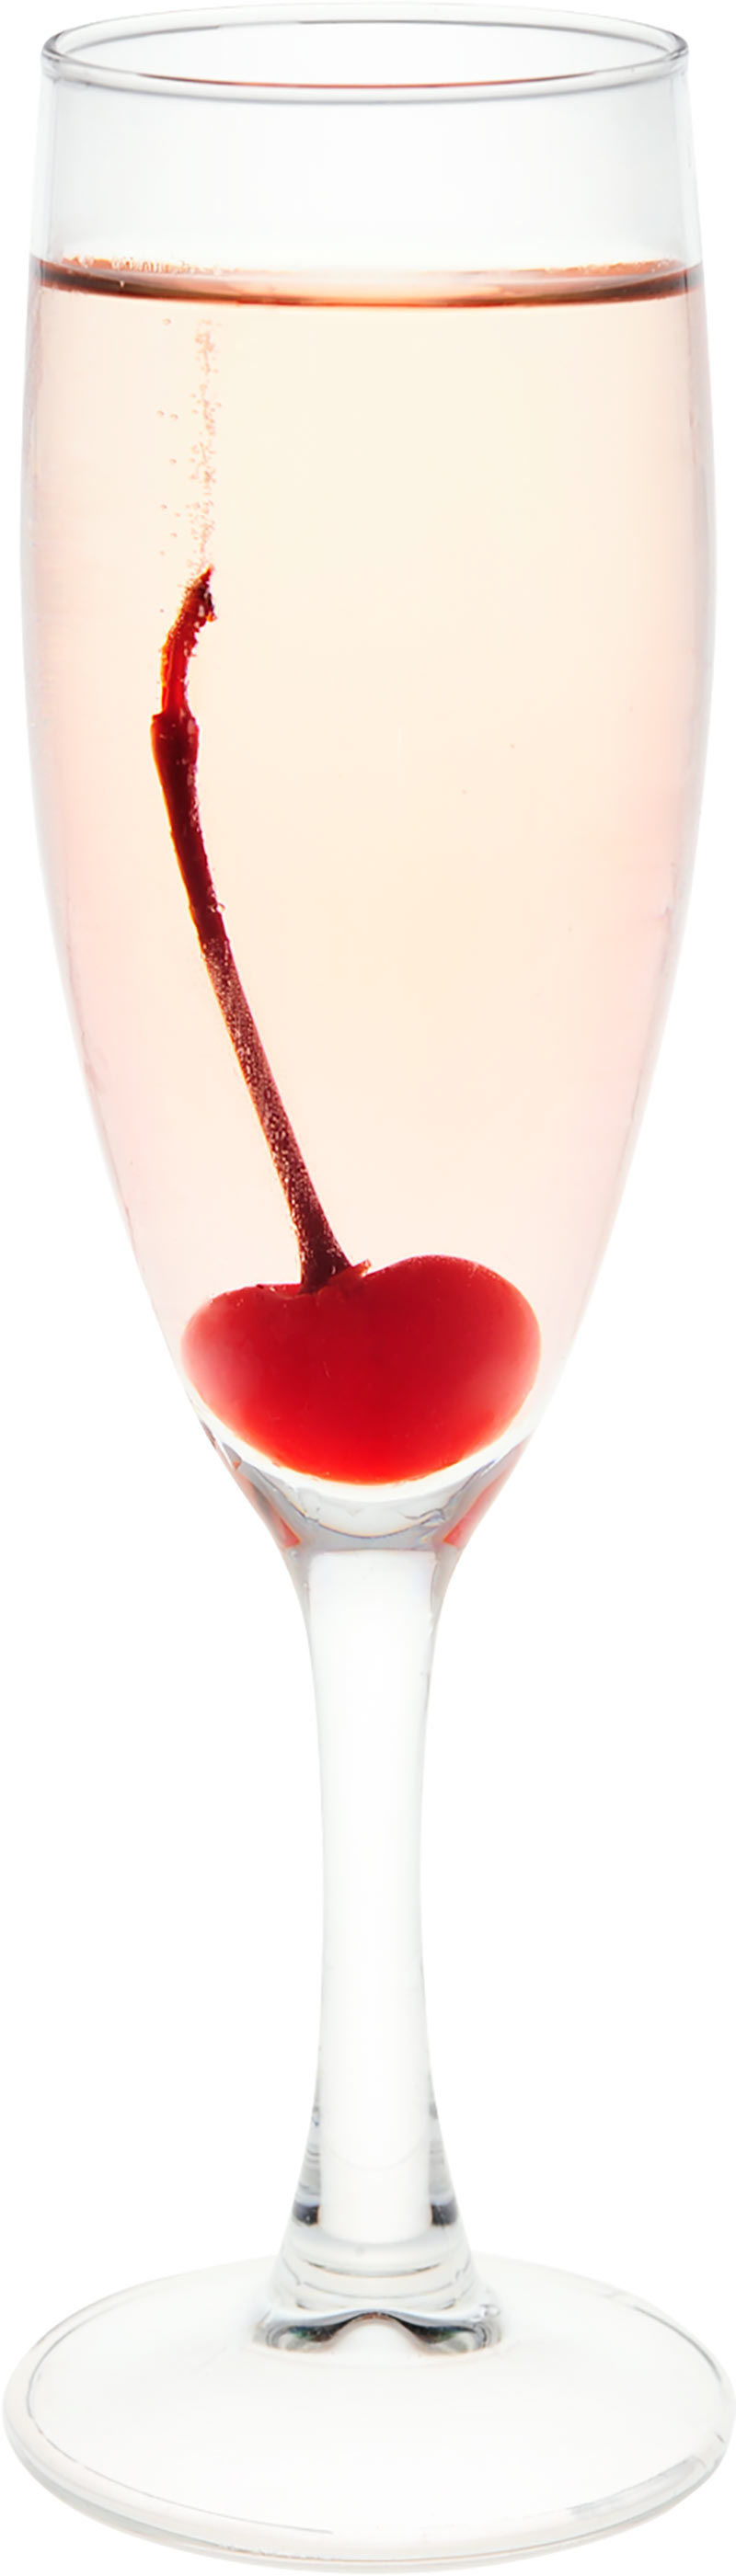 Comment préparer le cocktail Rhubarbe royale